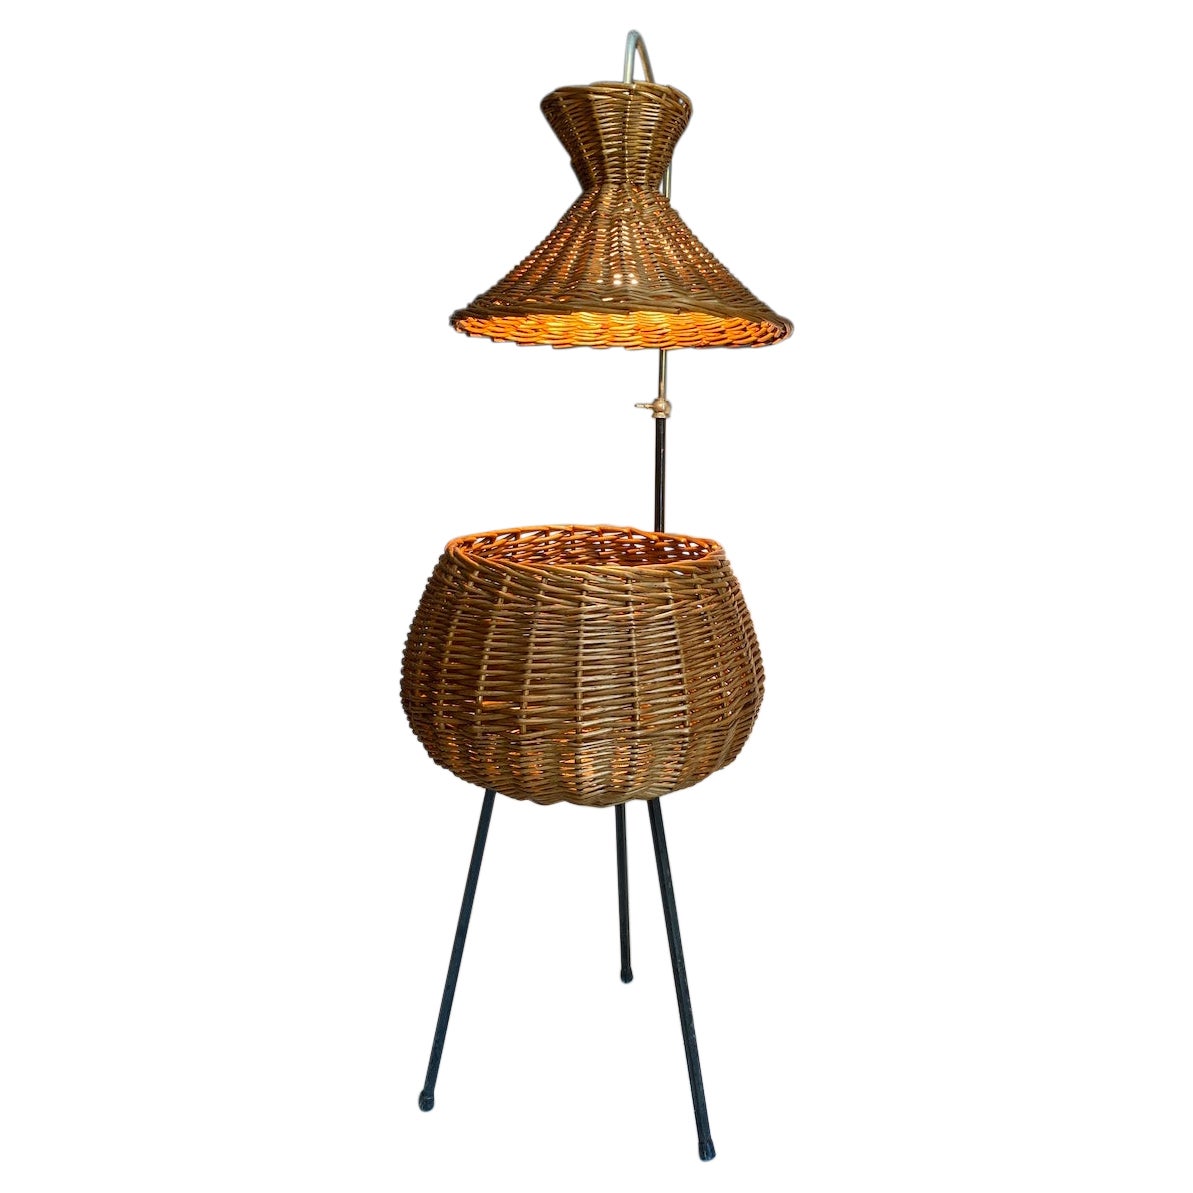 Rattan Worker-Shaped Floor Lamp 1960 Midcentury Vintage